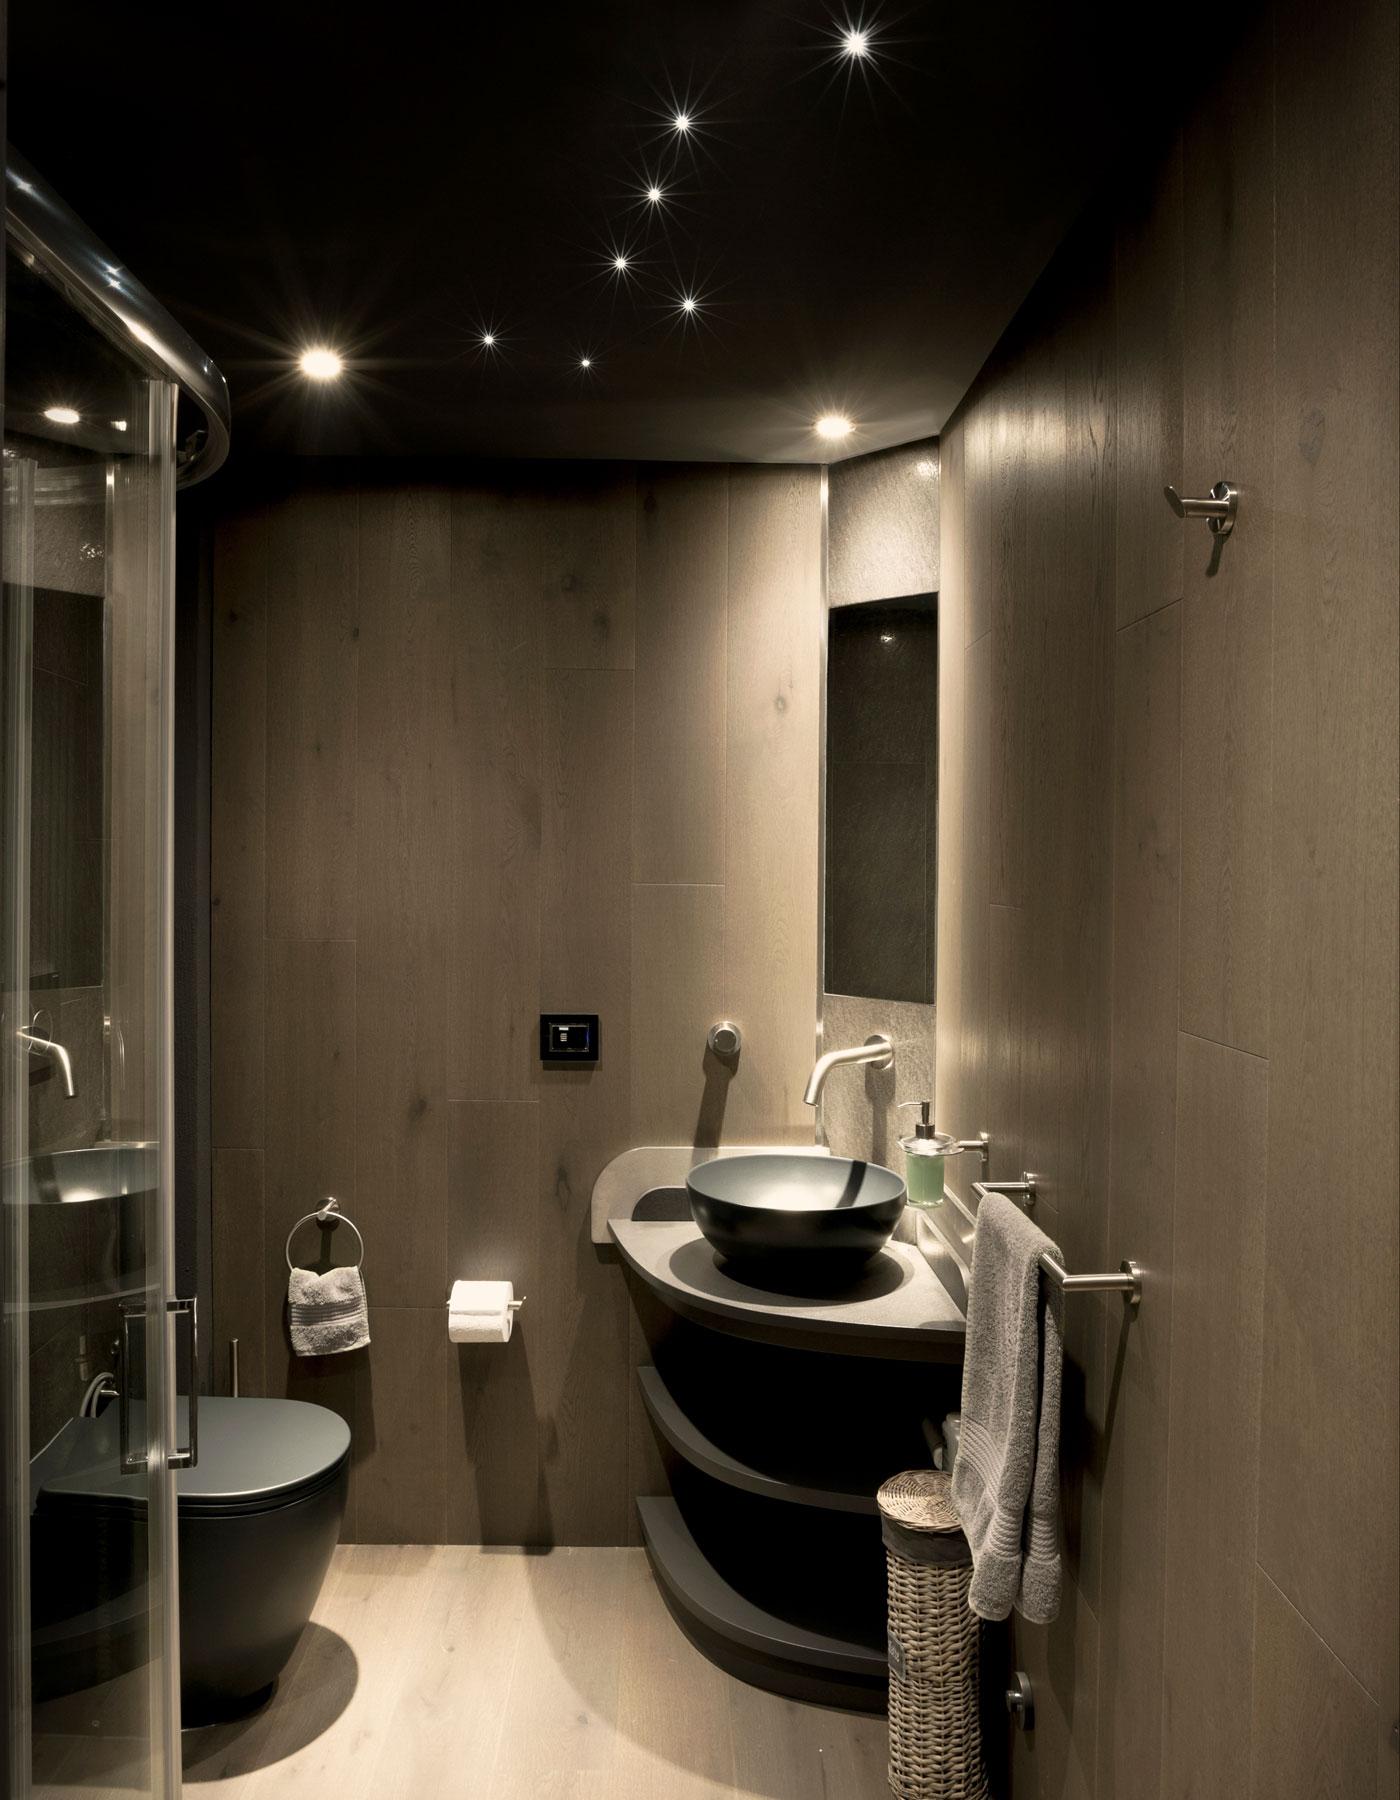 Bagno moderno rivestito in legno grigio con lavabo angolare, illuminazione con faretti spot e soffitto scuro